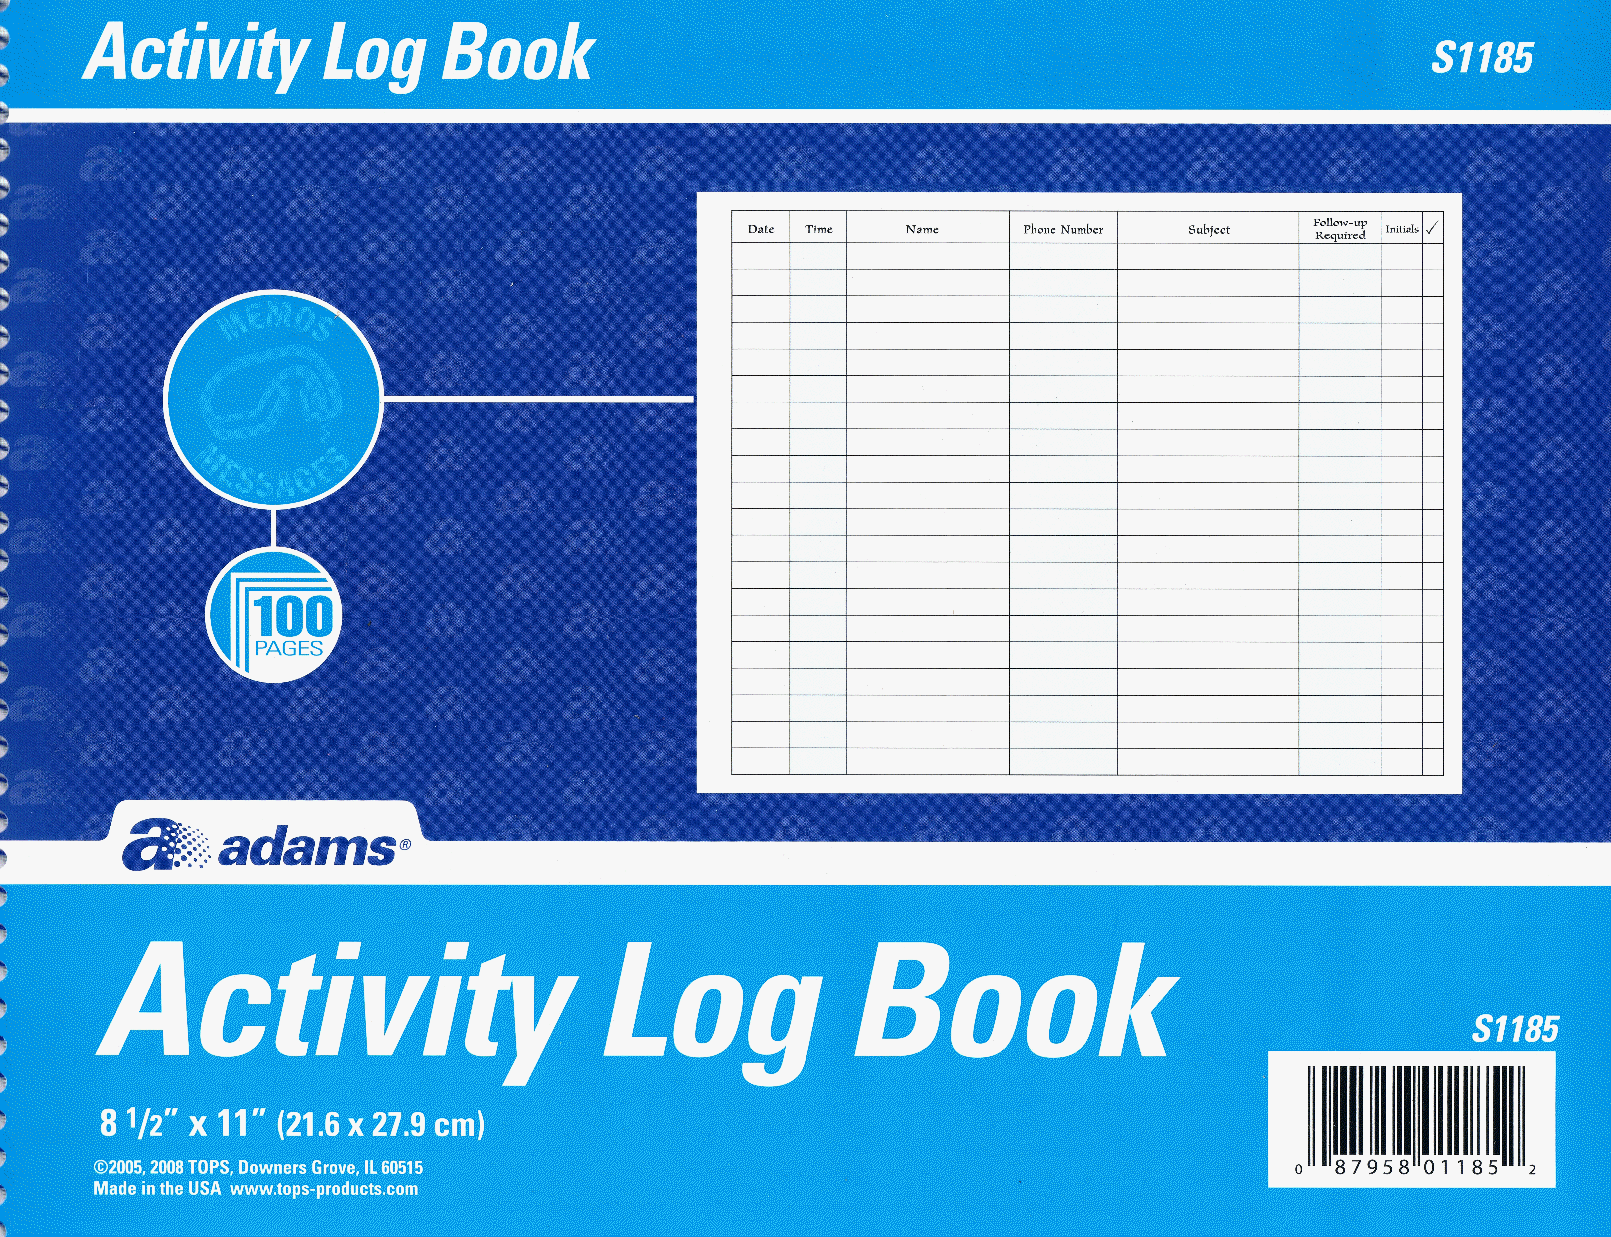 Black 110 Pages dans 11 x 8.5 Activity Log Book 27.9 x 21.6 cm